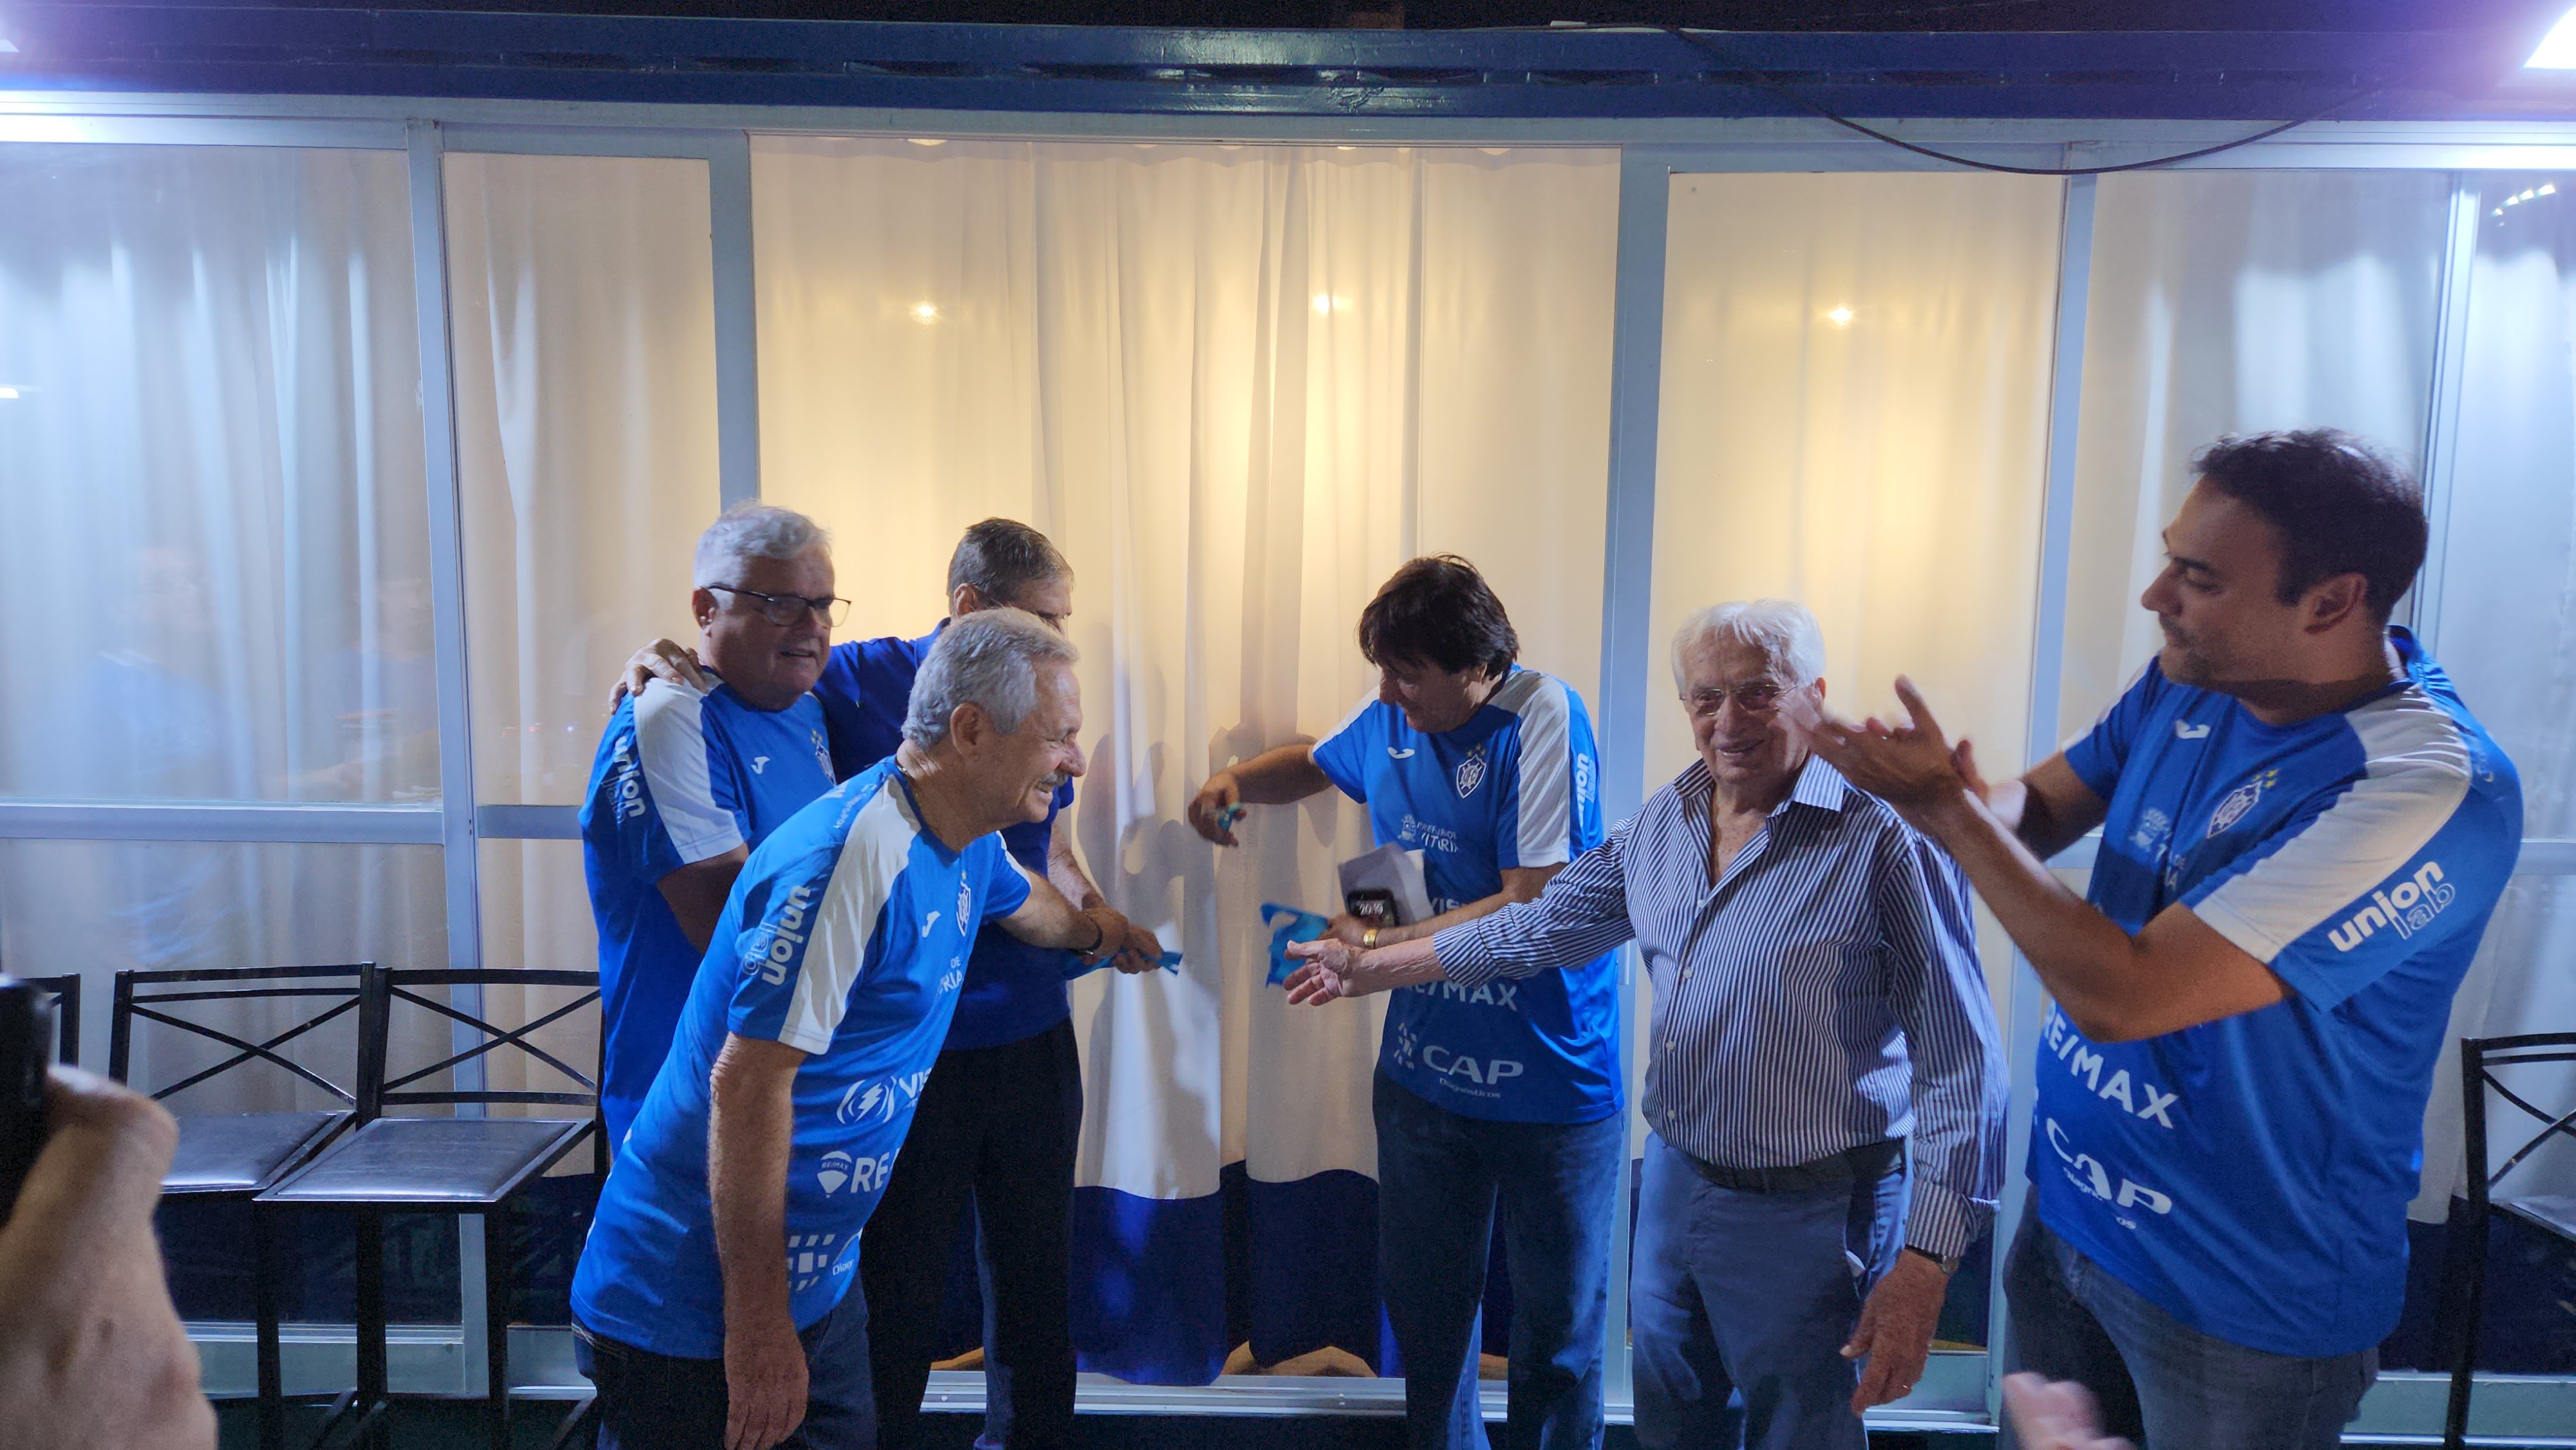 Evento aconteceu na noite desta segunda-feira (11), no estádio Salvador Costa, em Bento Ferreira, e também contou com a posse de José Augusto Mattos, o novo presidente do Alvianil